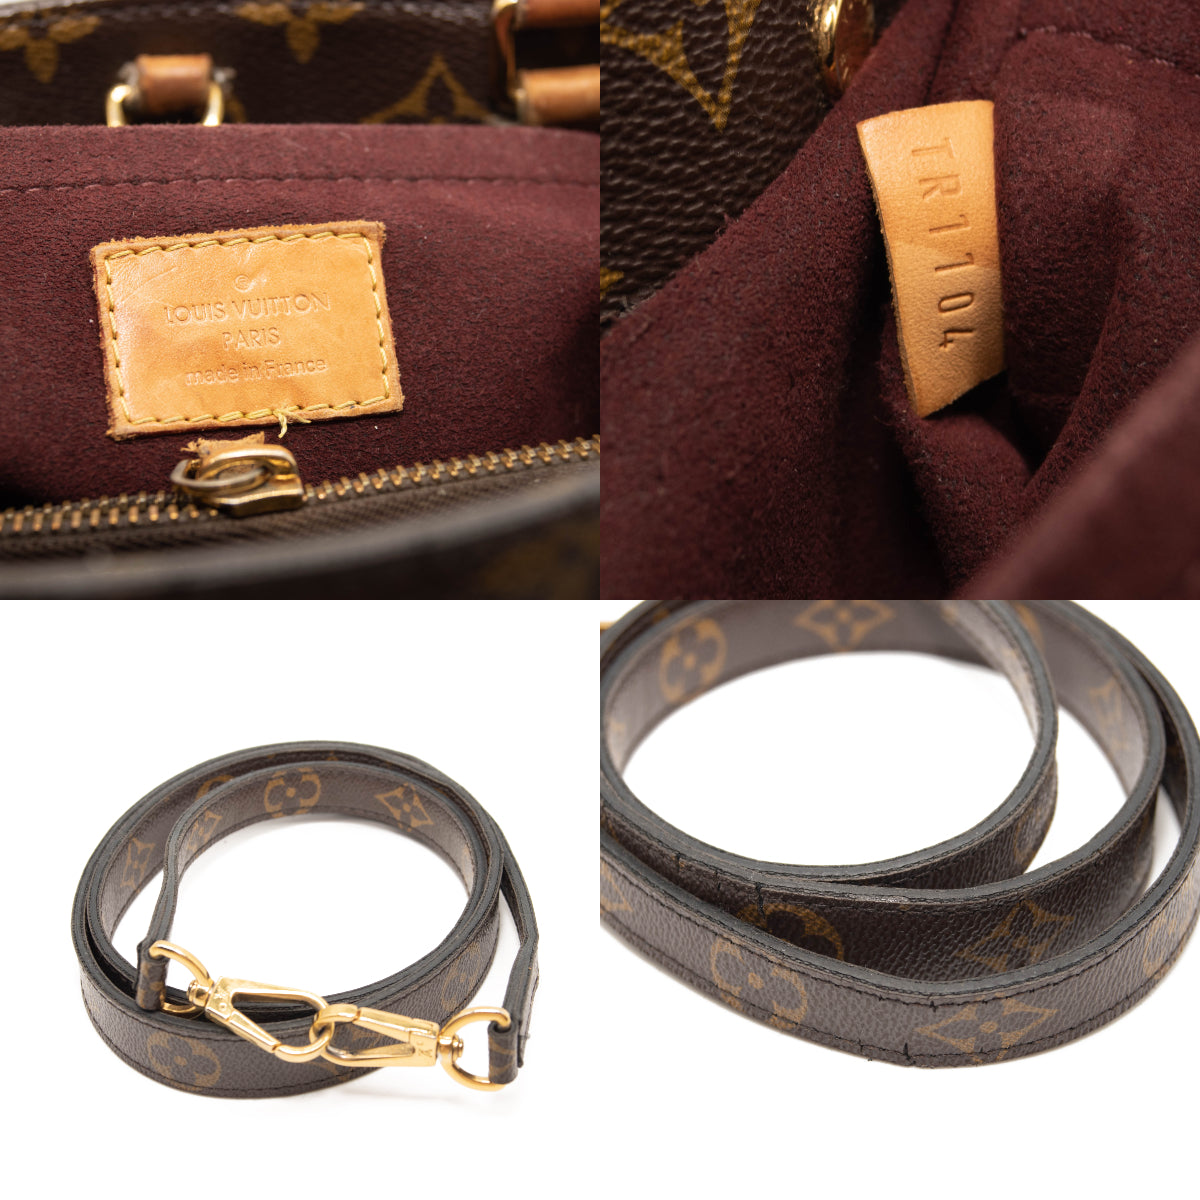 Louis+Vuitton+Montaigne+Top+Handle+Bag+MM+Brown+Canvas for sale online